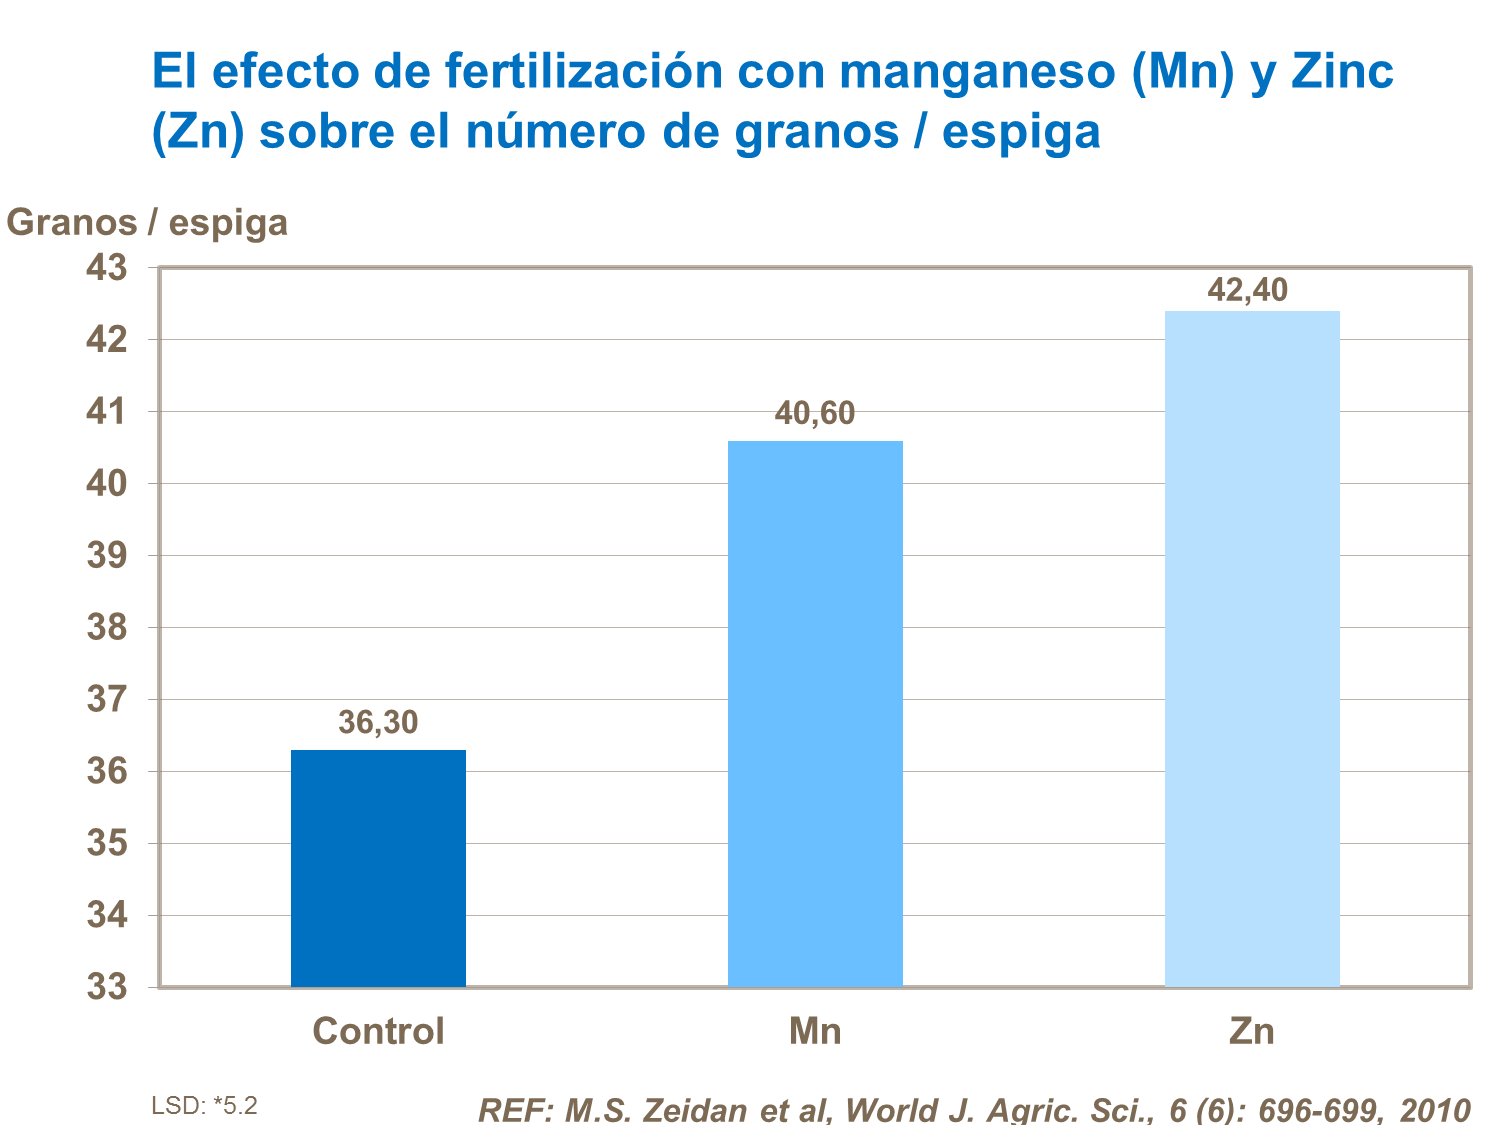 El efecto de fertilización con manganeso (Mn) y Zinc (Zn) sobre el número de granos  espiga